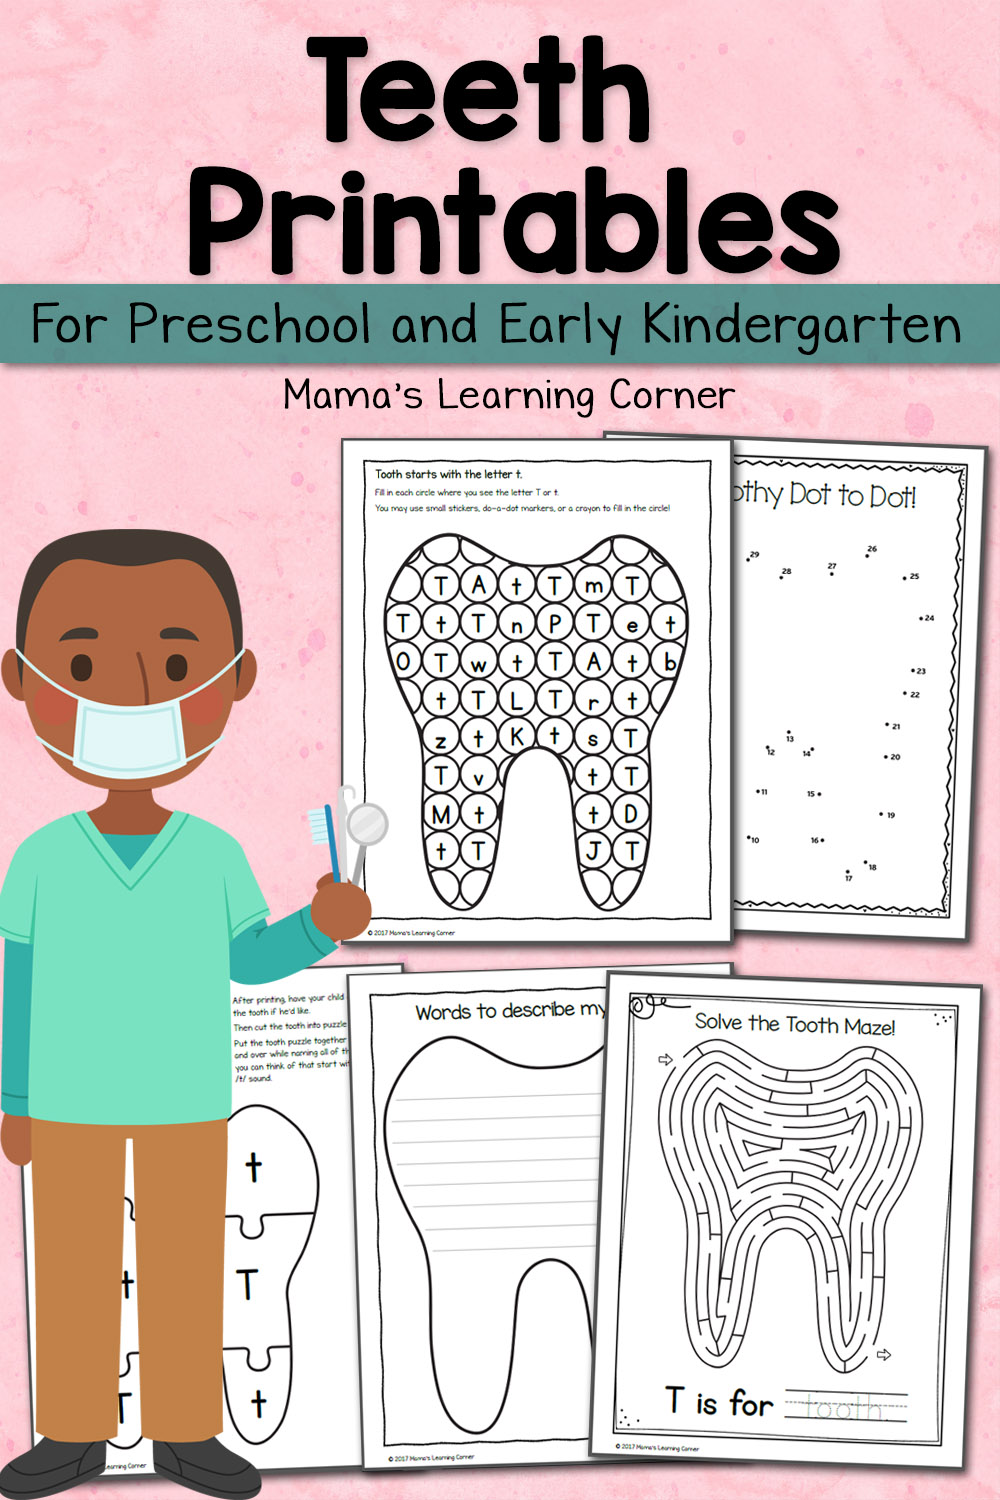 Teeth Activities for Preschool and Kindergarten - Mamas Learning Corner